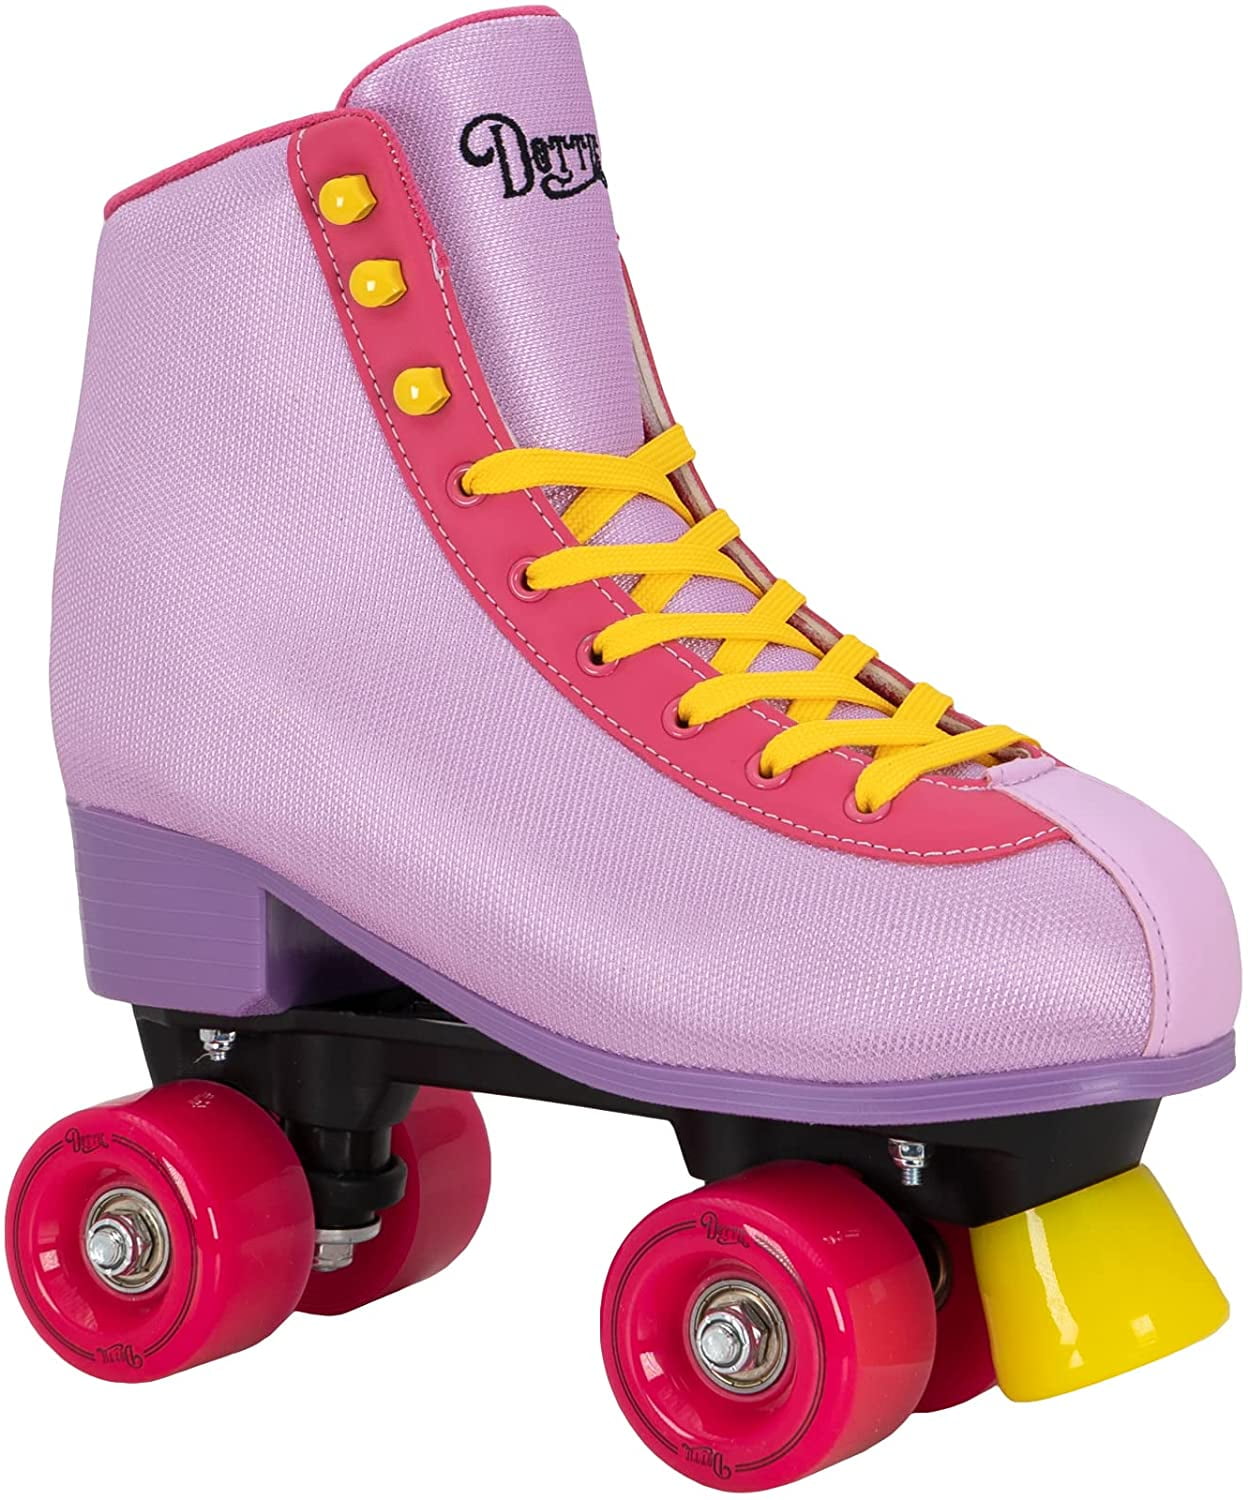 Hoopla Roller Skates for Girls Kids Quad Skate for Indoor or Outdoor Skating 